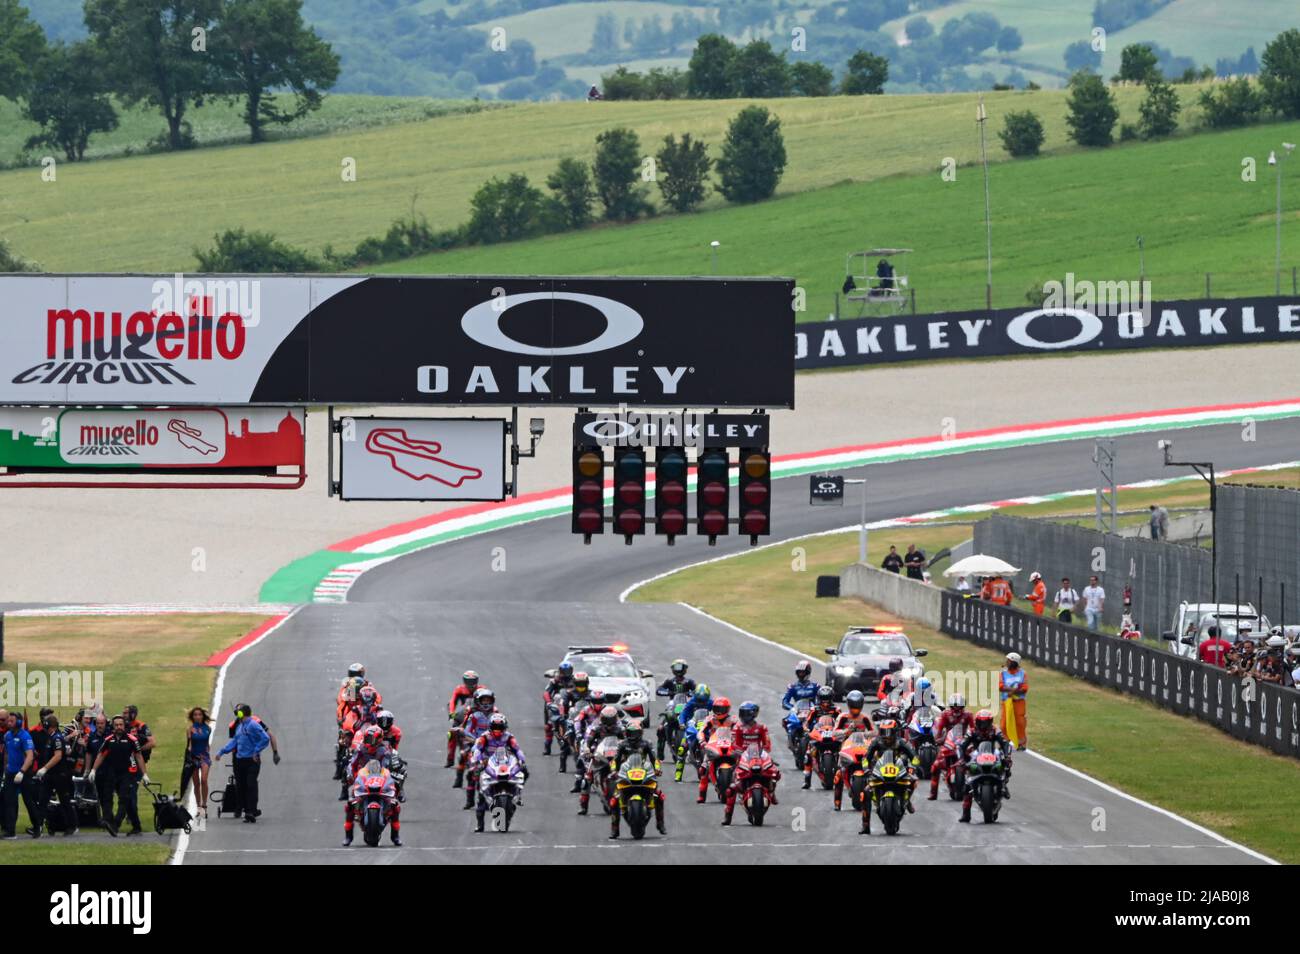 La parrilla de salida de la carrera MotoGP durante el Campeonato Mundial  MotoGP Gran Premio d'Italia Oakley Race el 29 de mayo de 2022 en el  Circuito Internacional Mugello en Scarperia (FI),